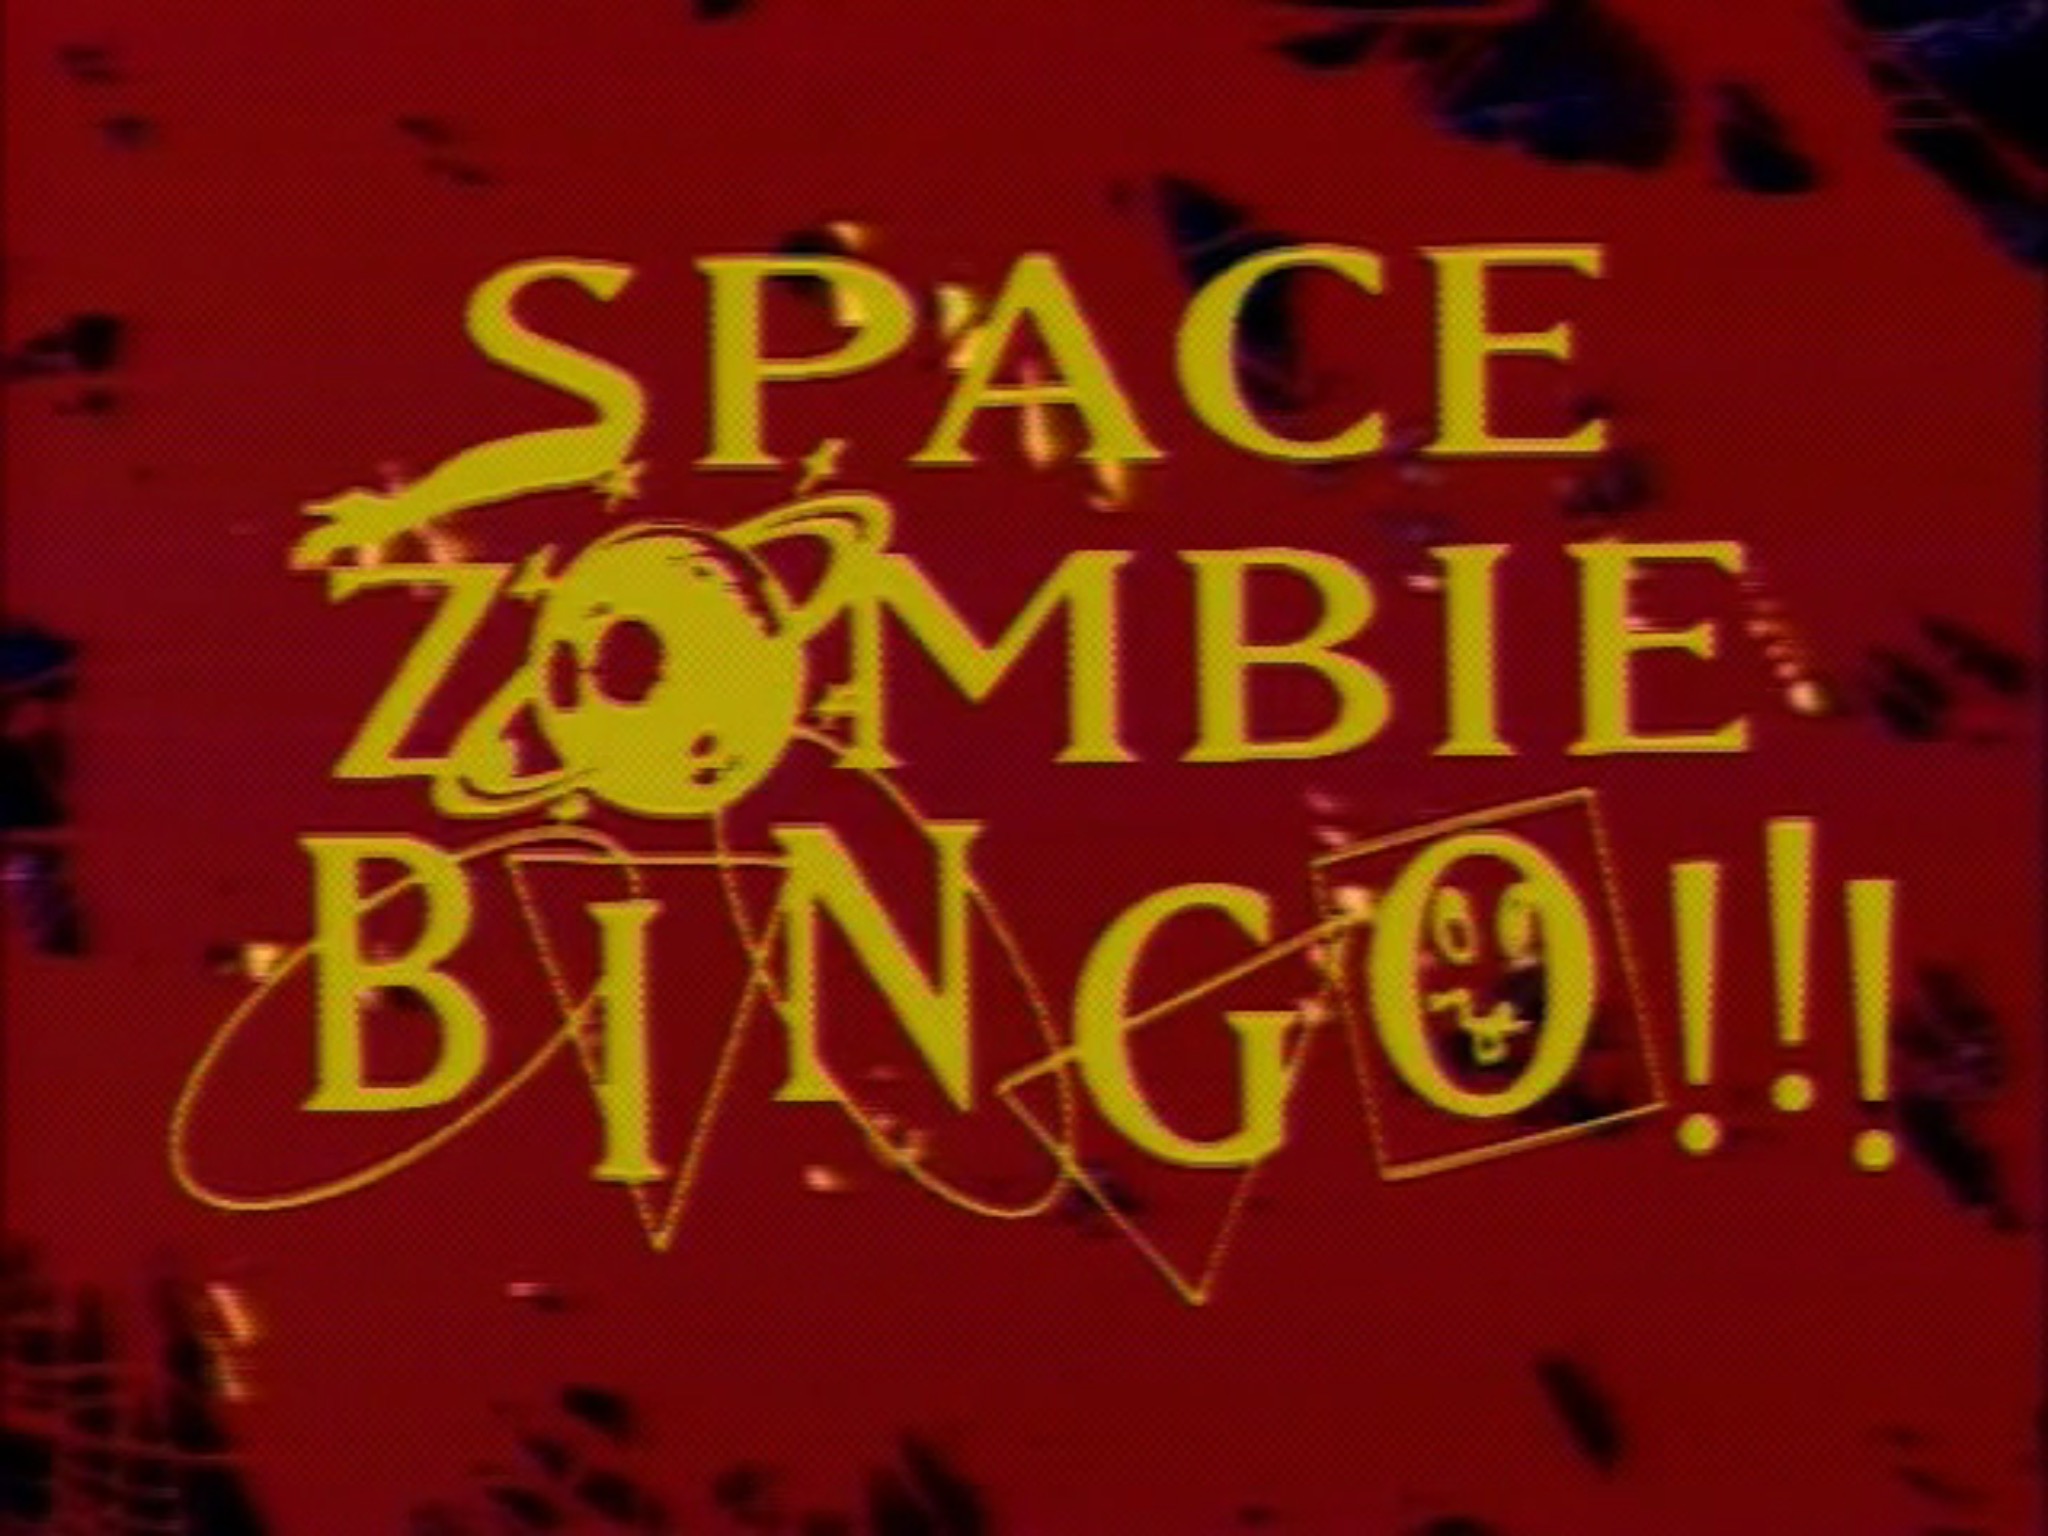 Space Zombie Bingo!!! (1993) Screenshot 4 